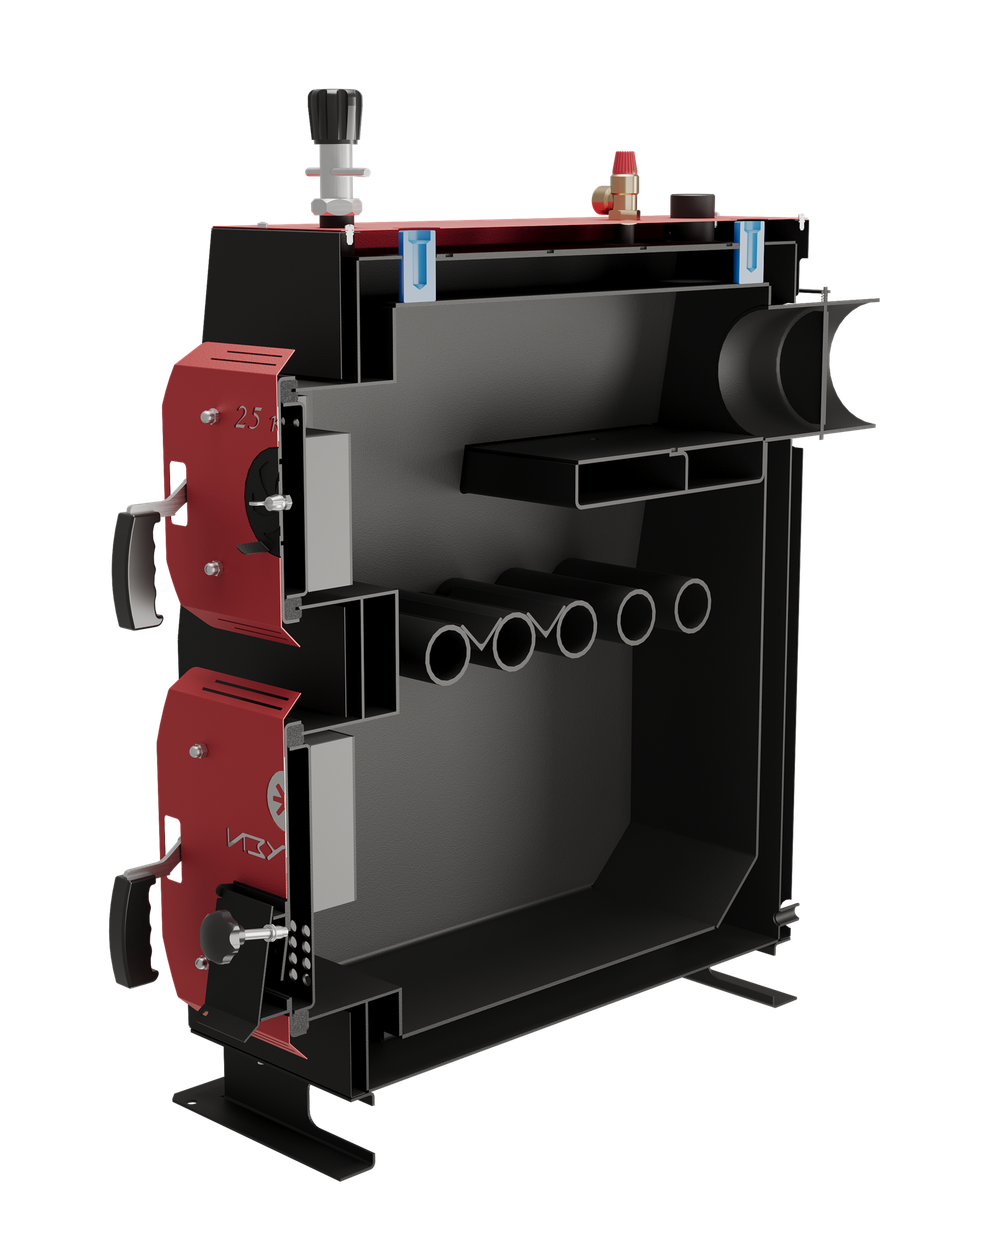 Твердотопливный котел длительного горения Изуран-16 в кожухе на 16 кВт. Отапливаемое помещение до 432 куб.м. В разрезе. Производитель - Изуран